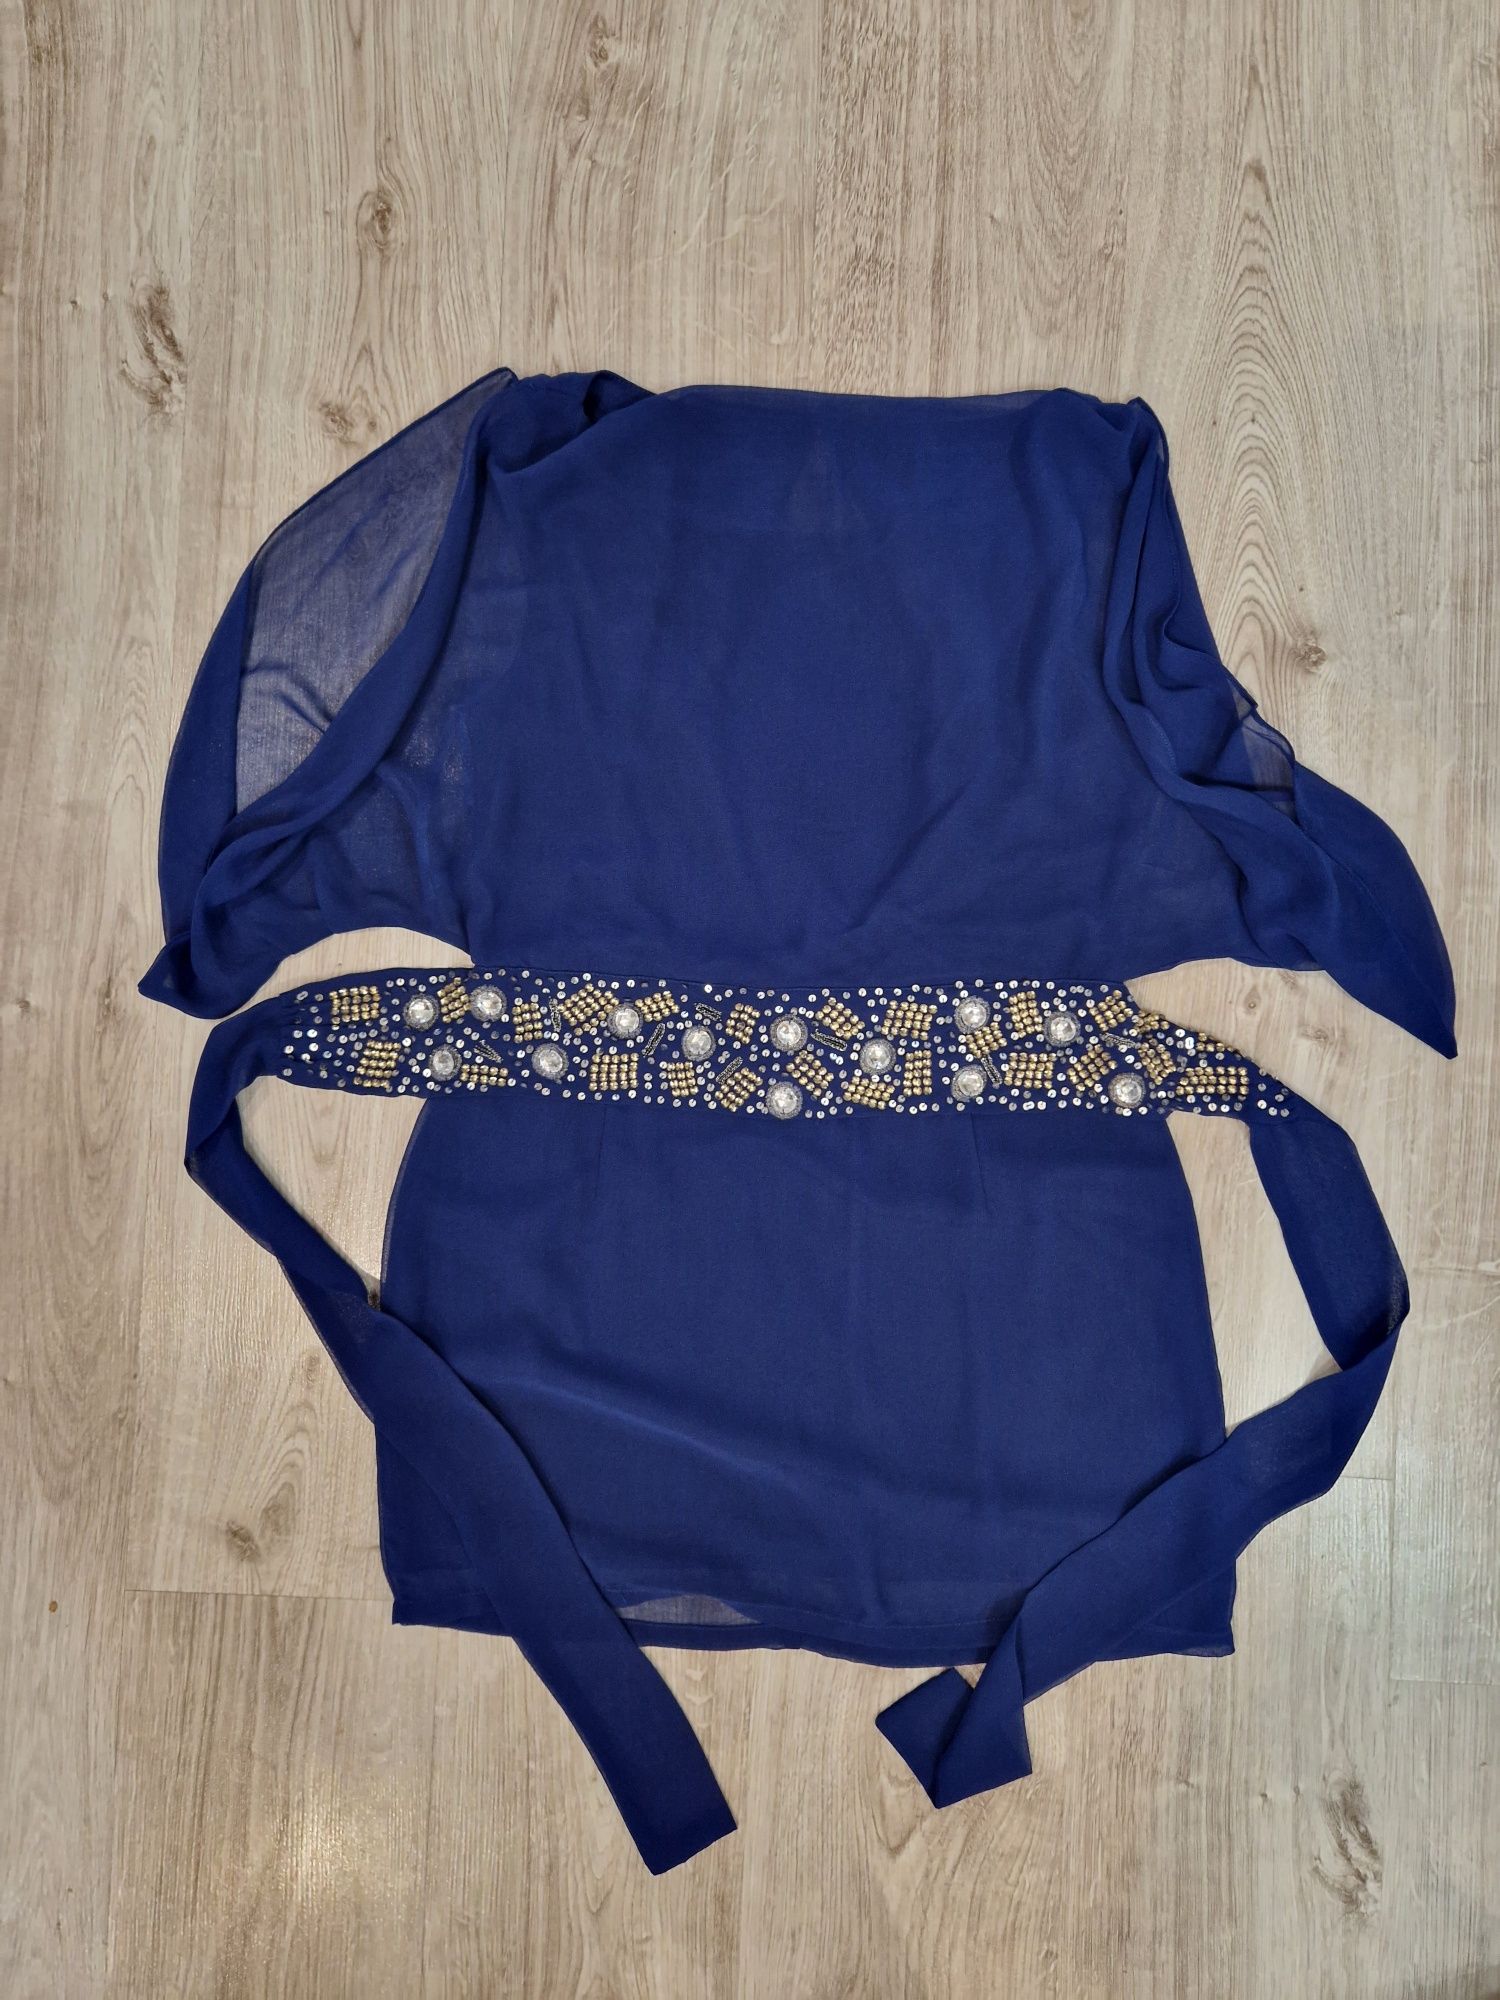 Sukienka niebieska M L zdobiona cekinami , rozciencia na rękawach, odk